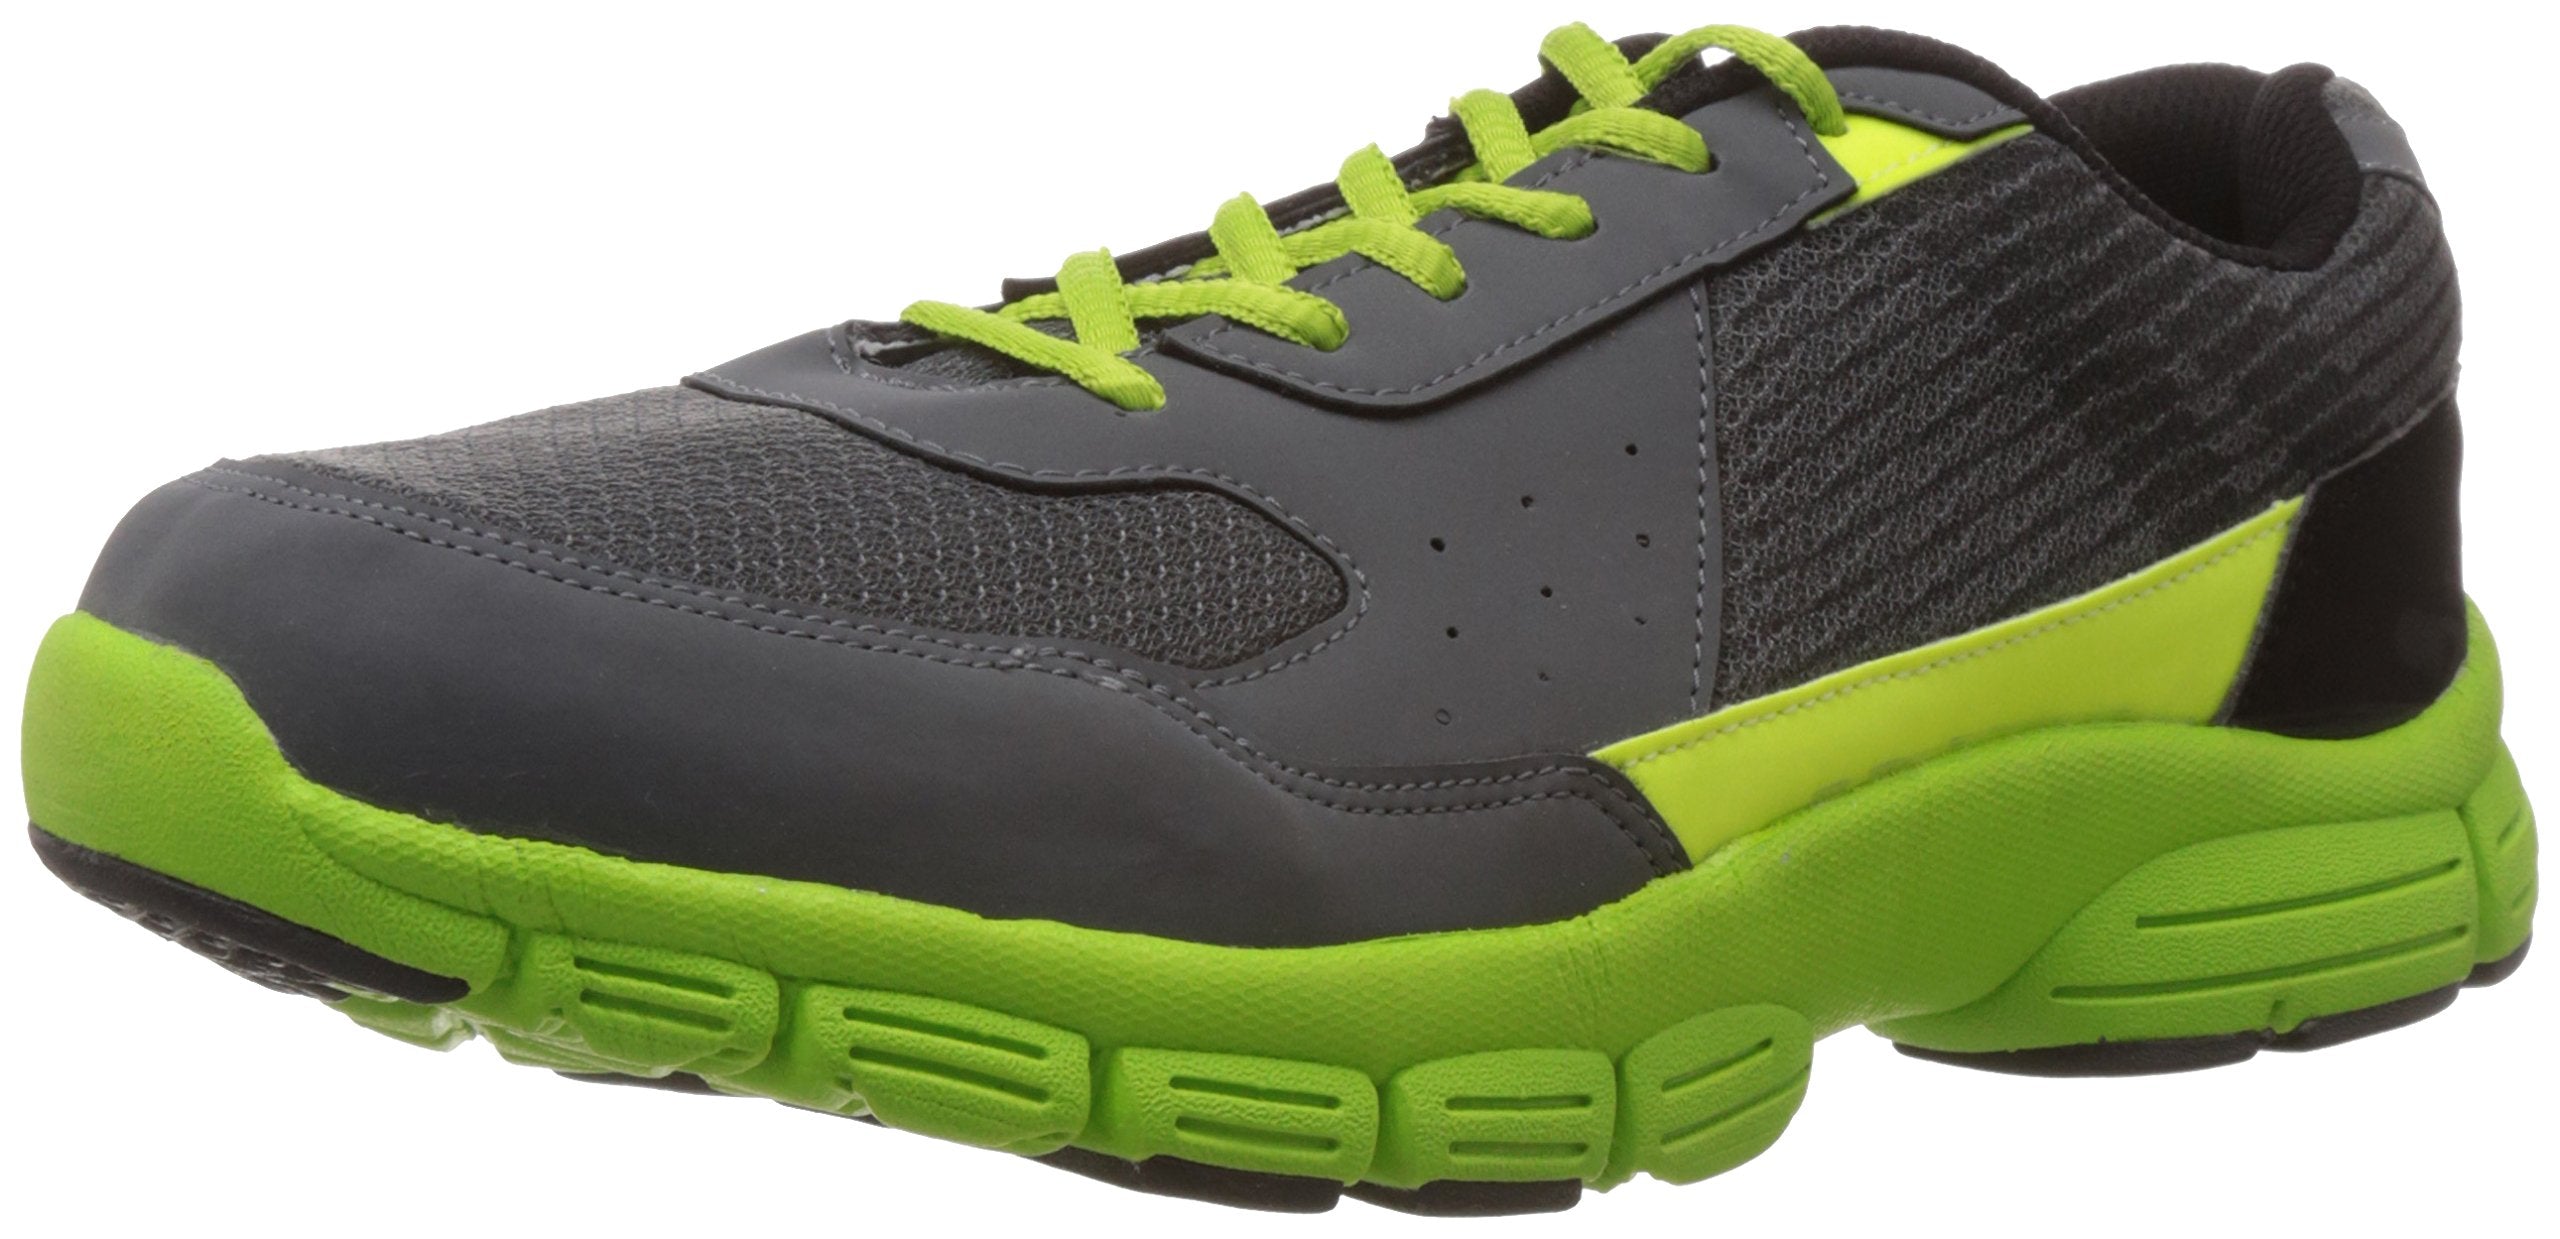 Vector X Rs 5013 Running Shoes, Men's UK 10 (Grey/Green)